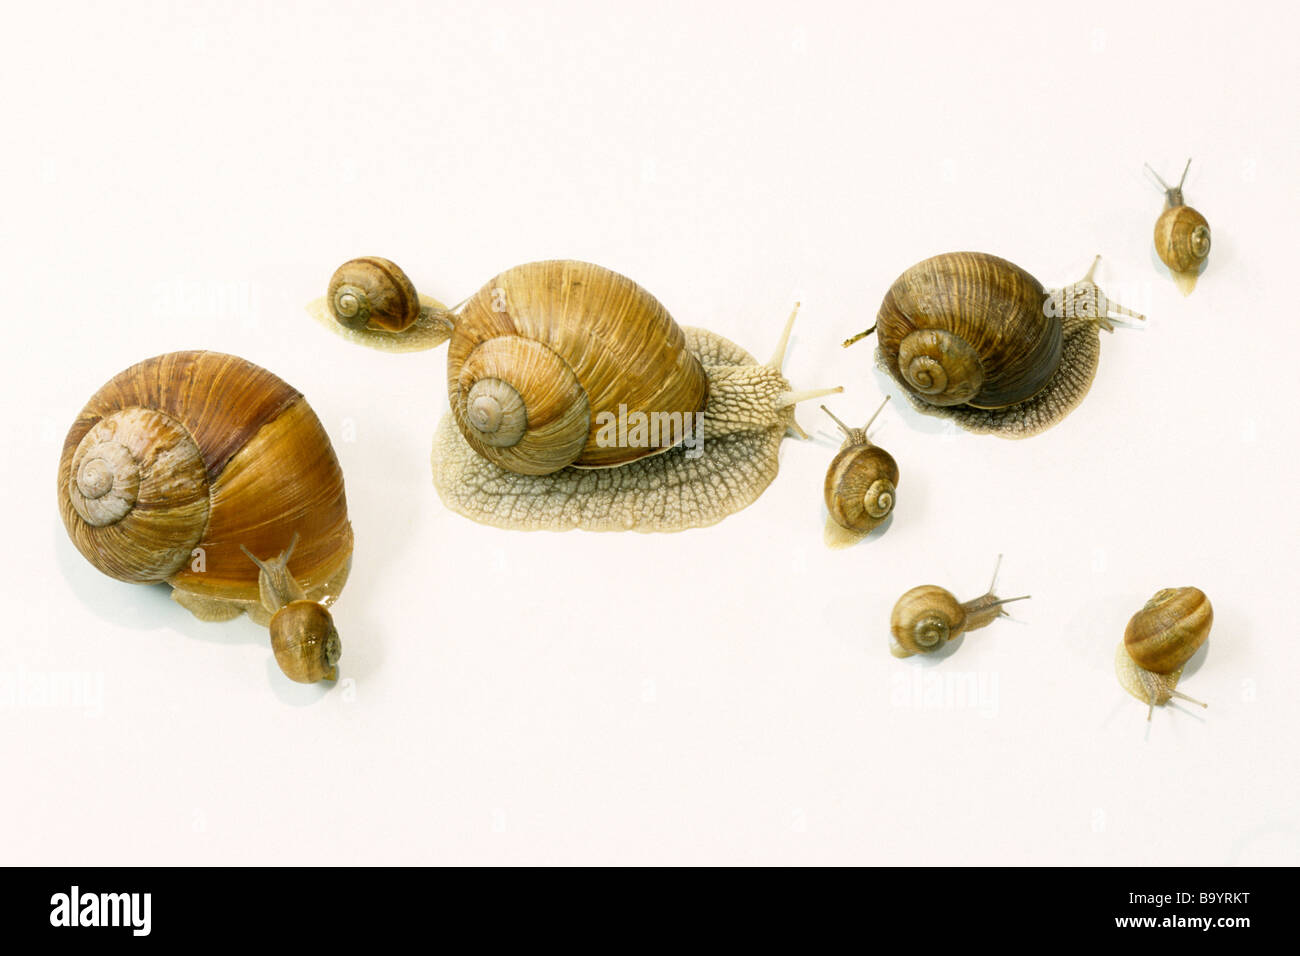 Escargot romain, les escargots escargot, escargots (Helix pomatia), plusieurs individus d'âge différent, studio photo Banque D'Images